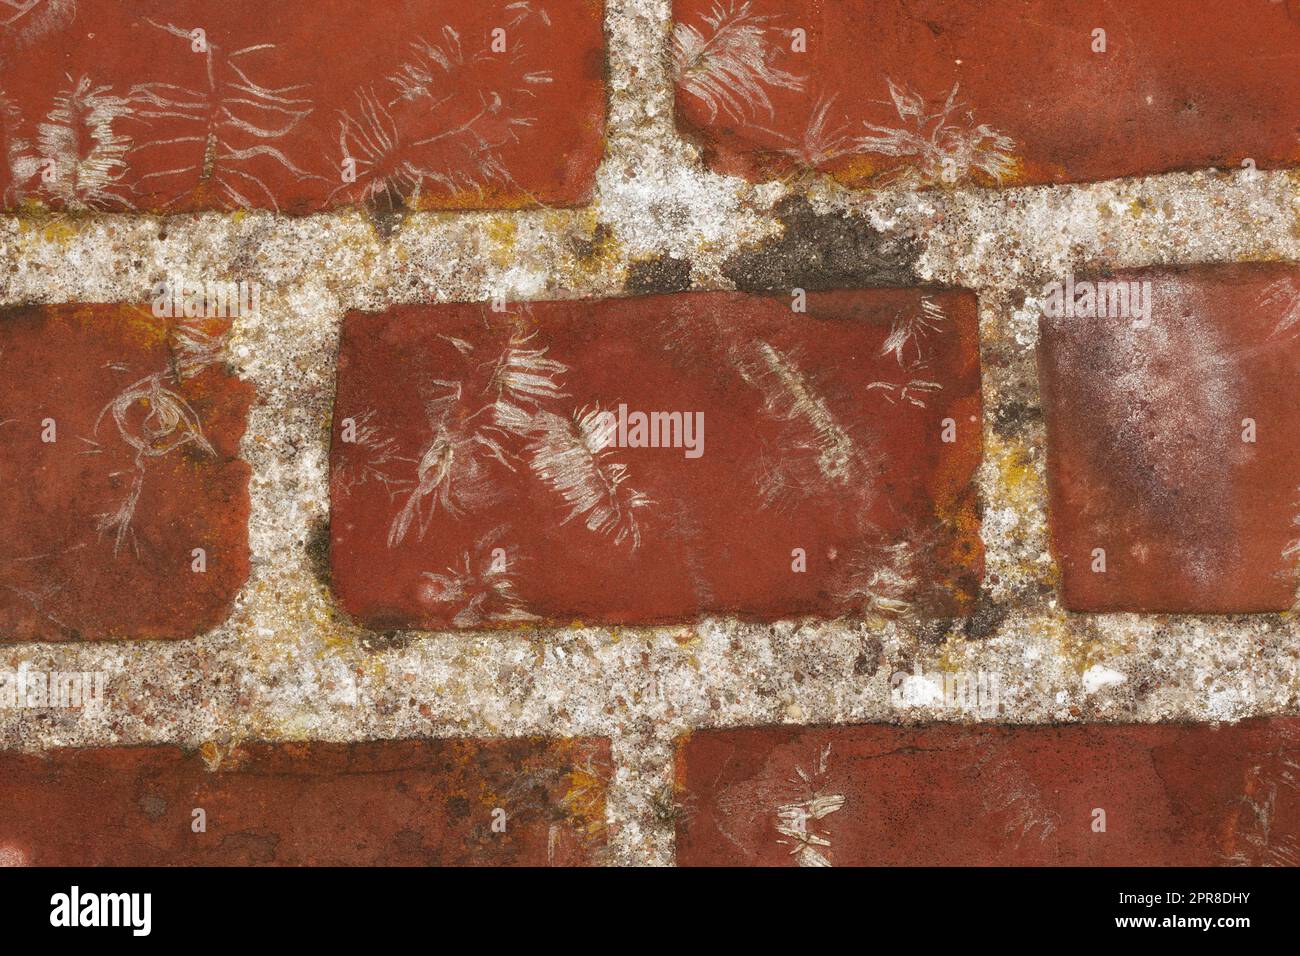 Primo piano del muro di mattoni rossi sulla superficie esterna rustica di una casa, una casa o un edificio cittadino. Struttura, dettaglio dell'architettura ruvida progettazione di mattoni facciali su una vecchia struttura in decomposizione Foto Stock